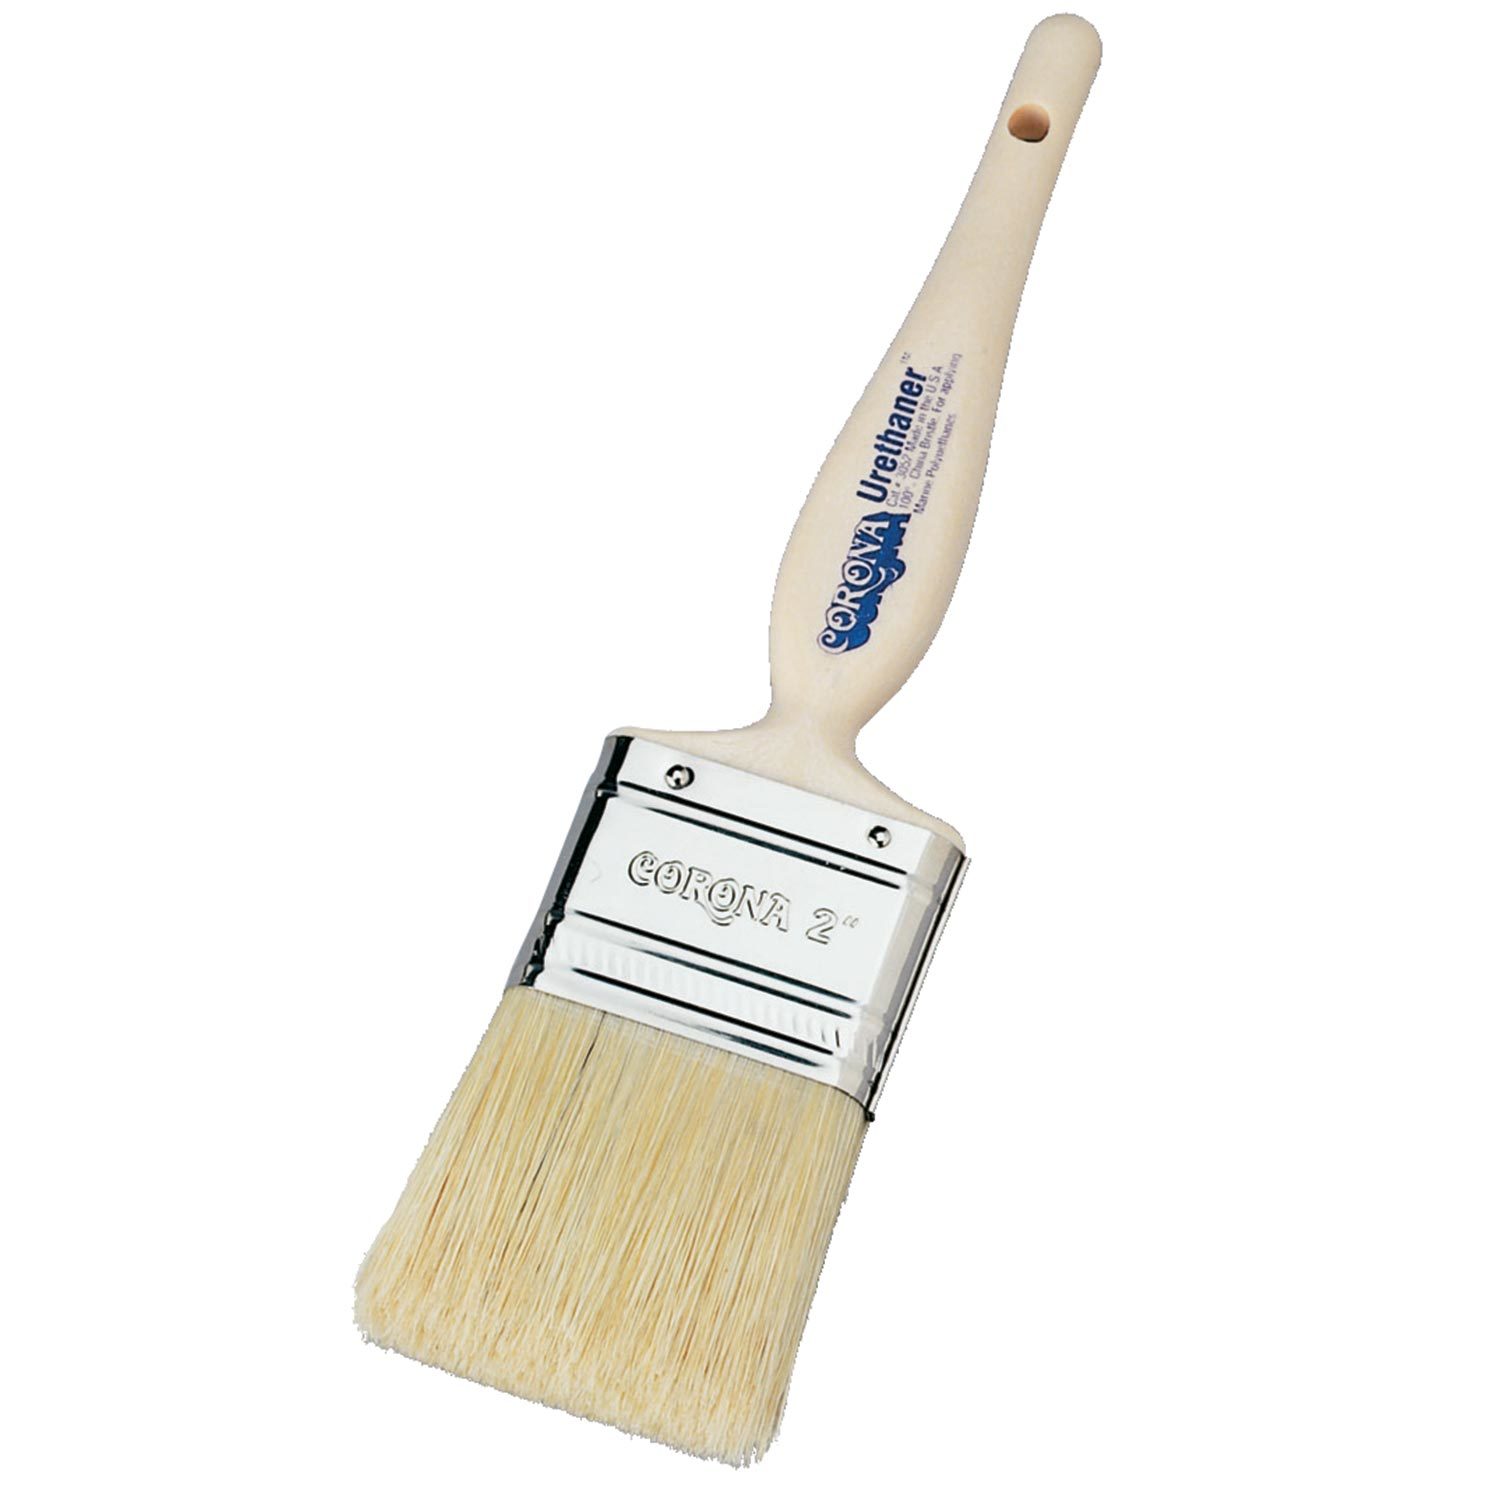 CORONA BRUSHES “Urethaner” Natural Bristle Paint Brushes